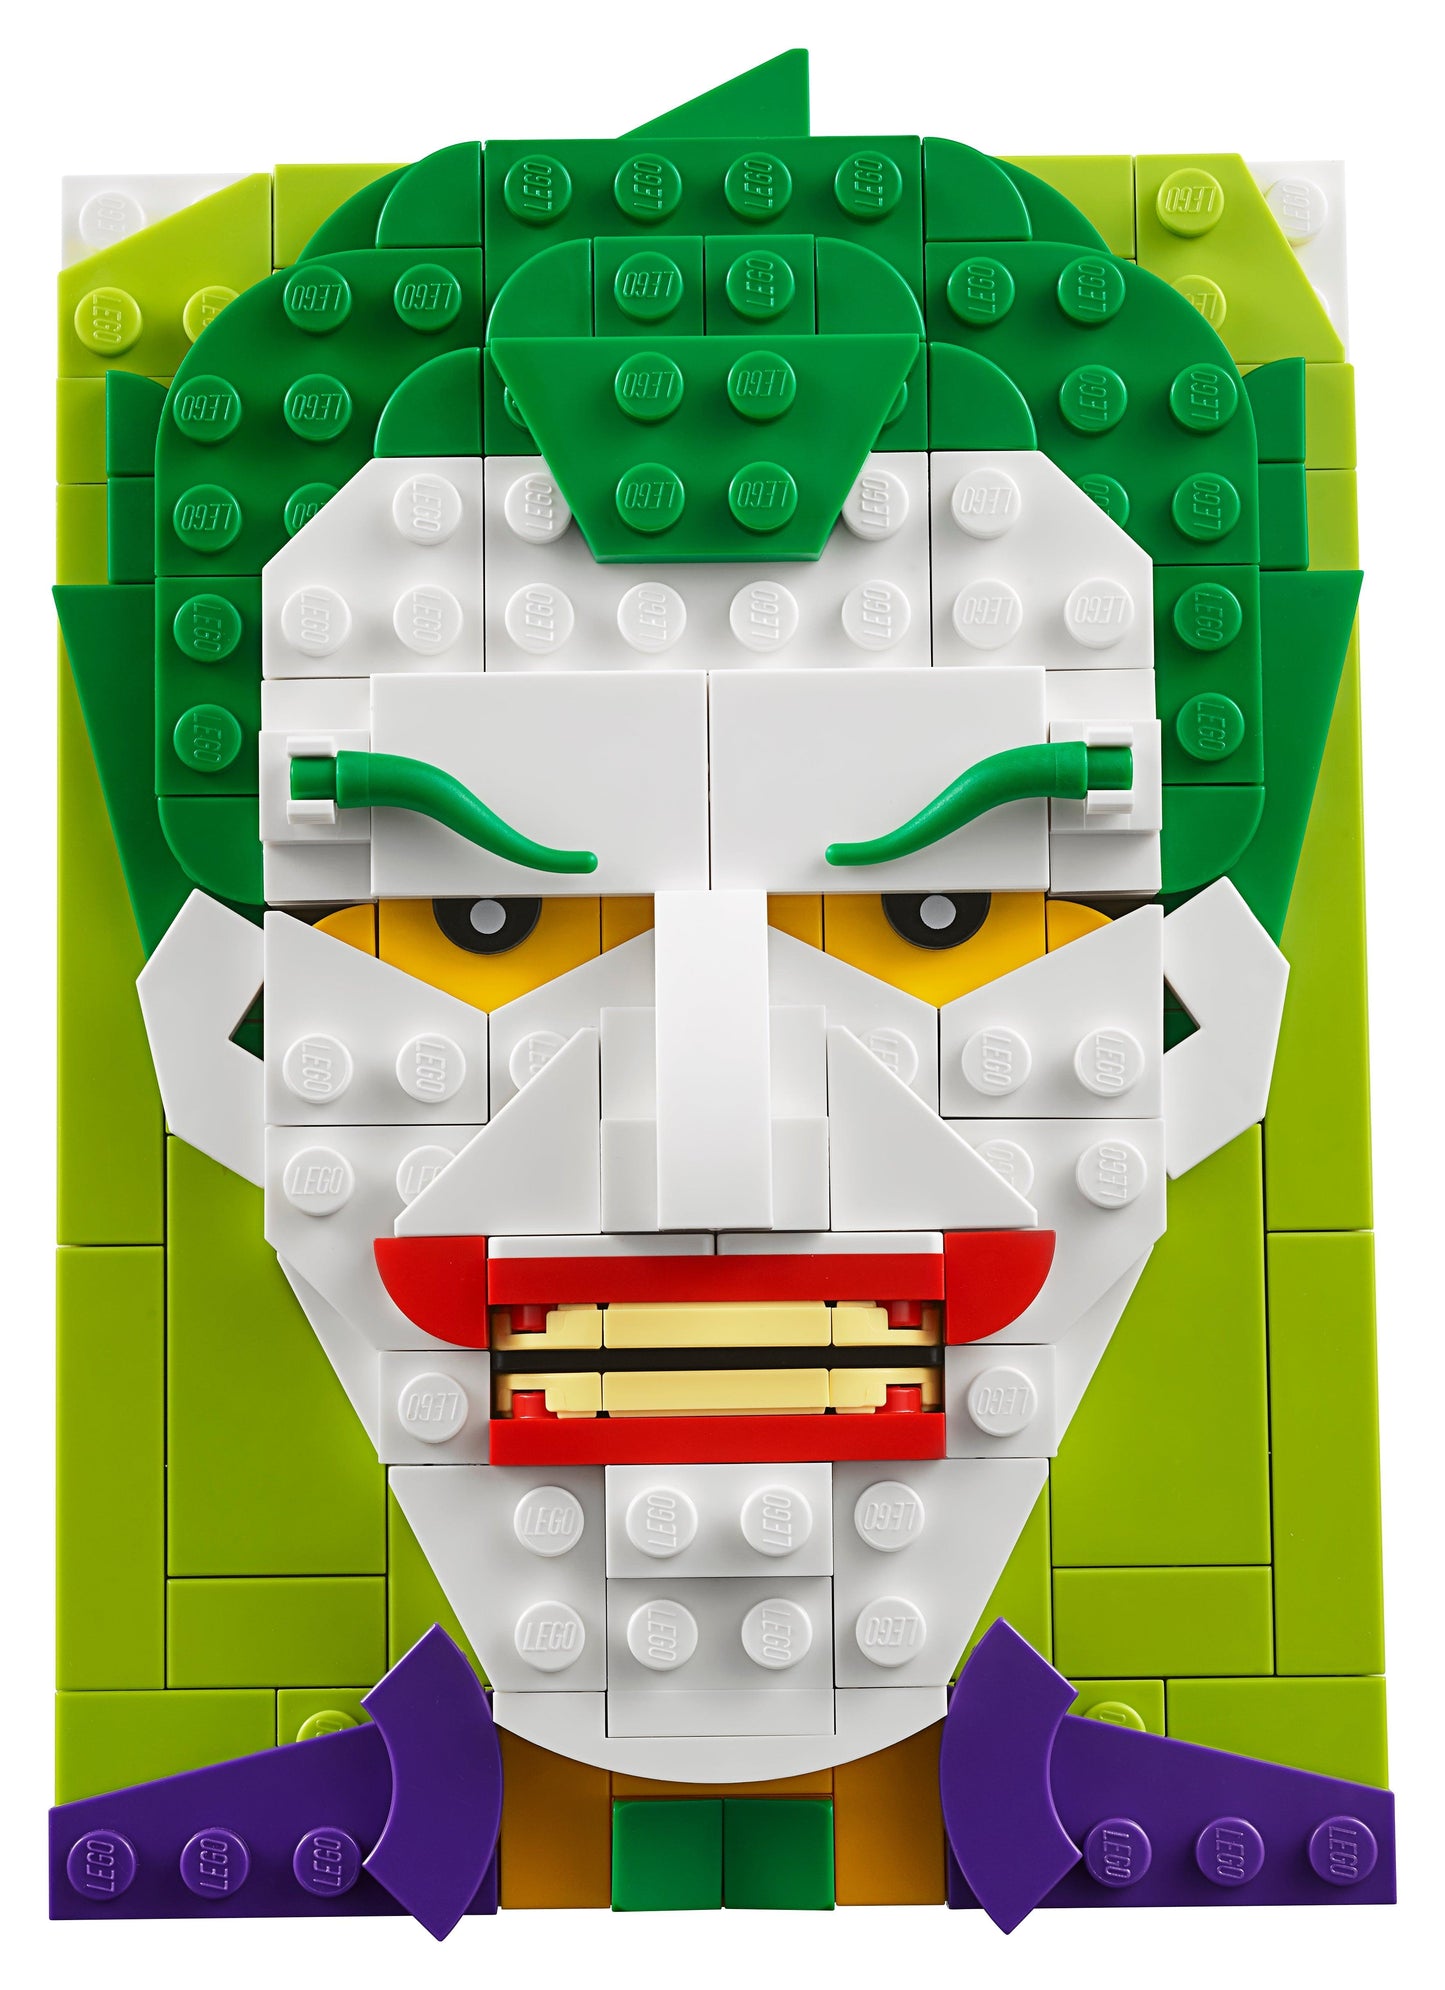 LEGO The Joker van batman schilderij 40428 Brick Sketches LEGO BATMAN @ 2TTOYS LEGO €. 13.99